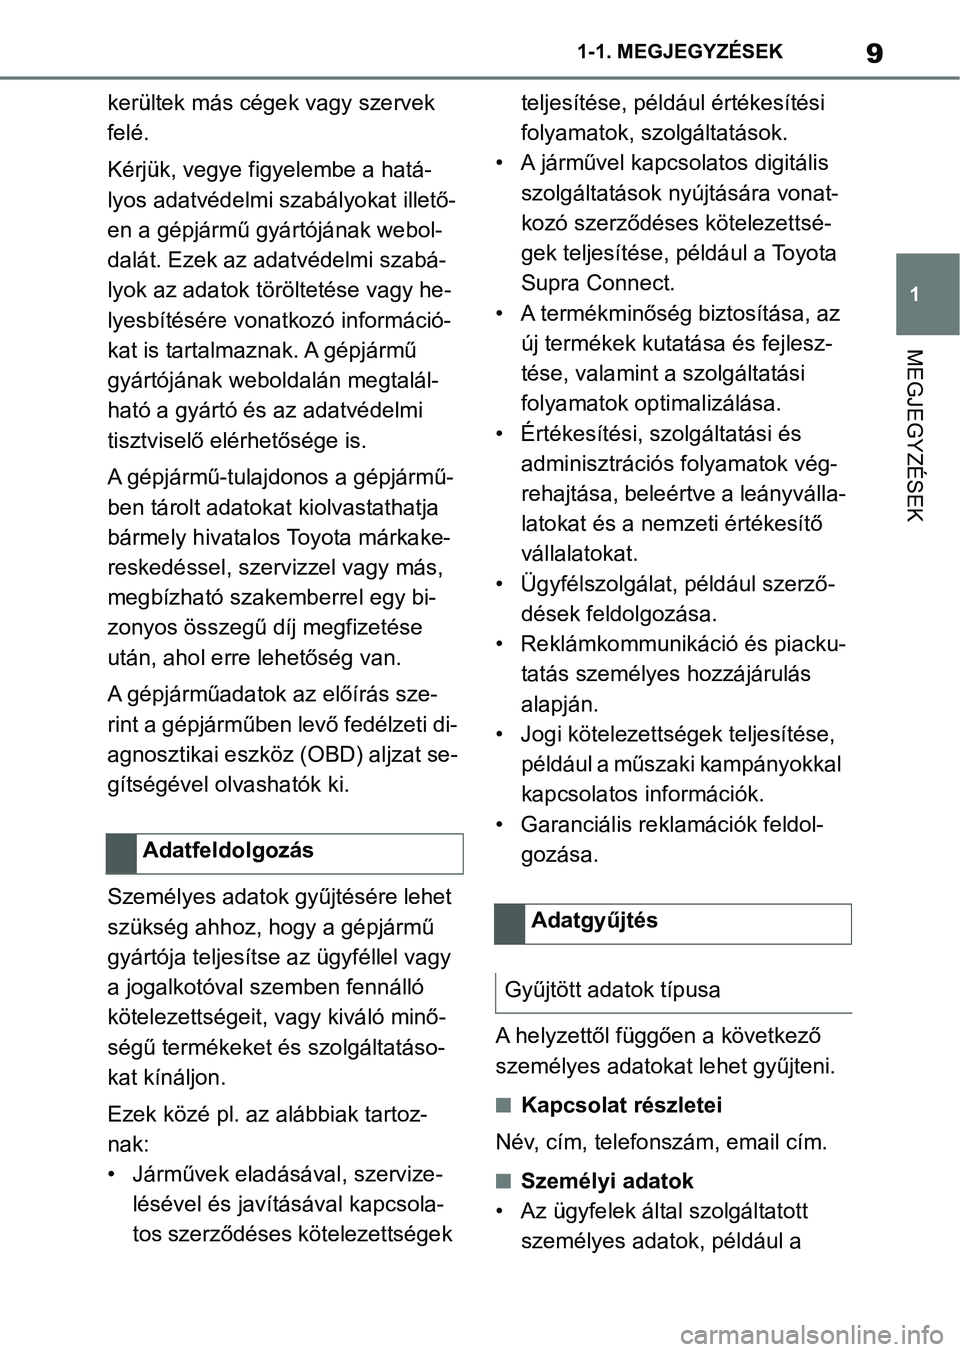 TOYOTA SUPRA 2020  Kezelési útmutató (in Hungarian) 9
1
1-1. MEGJEGYZÉSEK
MEGJEGYZÉSEK
kerültek más cégek vagy szervek 
felé.
Kérjük, vegye figyelembe a hatá-
lyos adatvédelmi szabályokat illető-
en a gépjármű gyártójának webol-
dalá